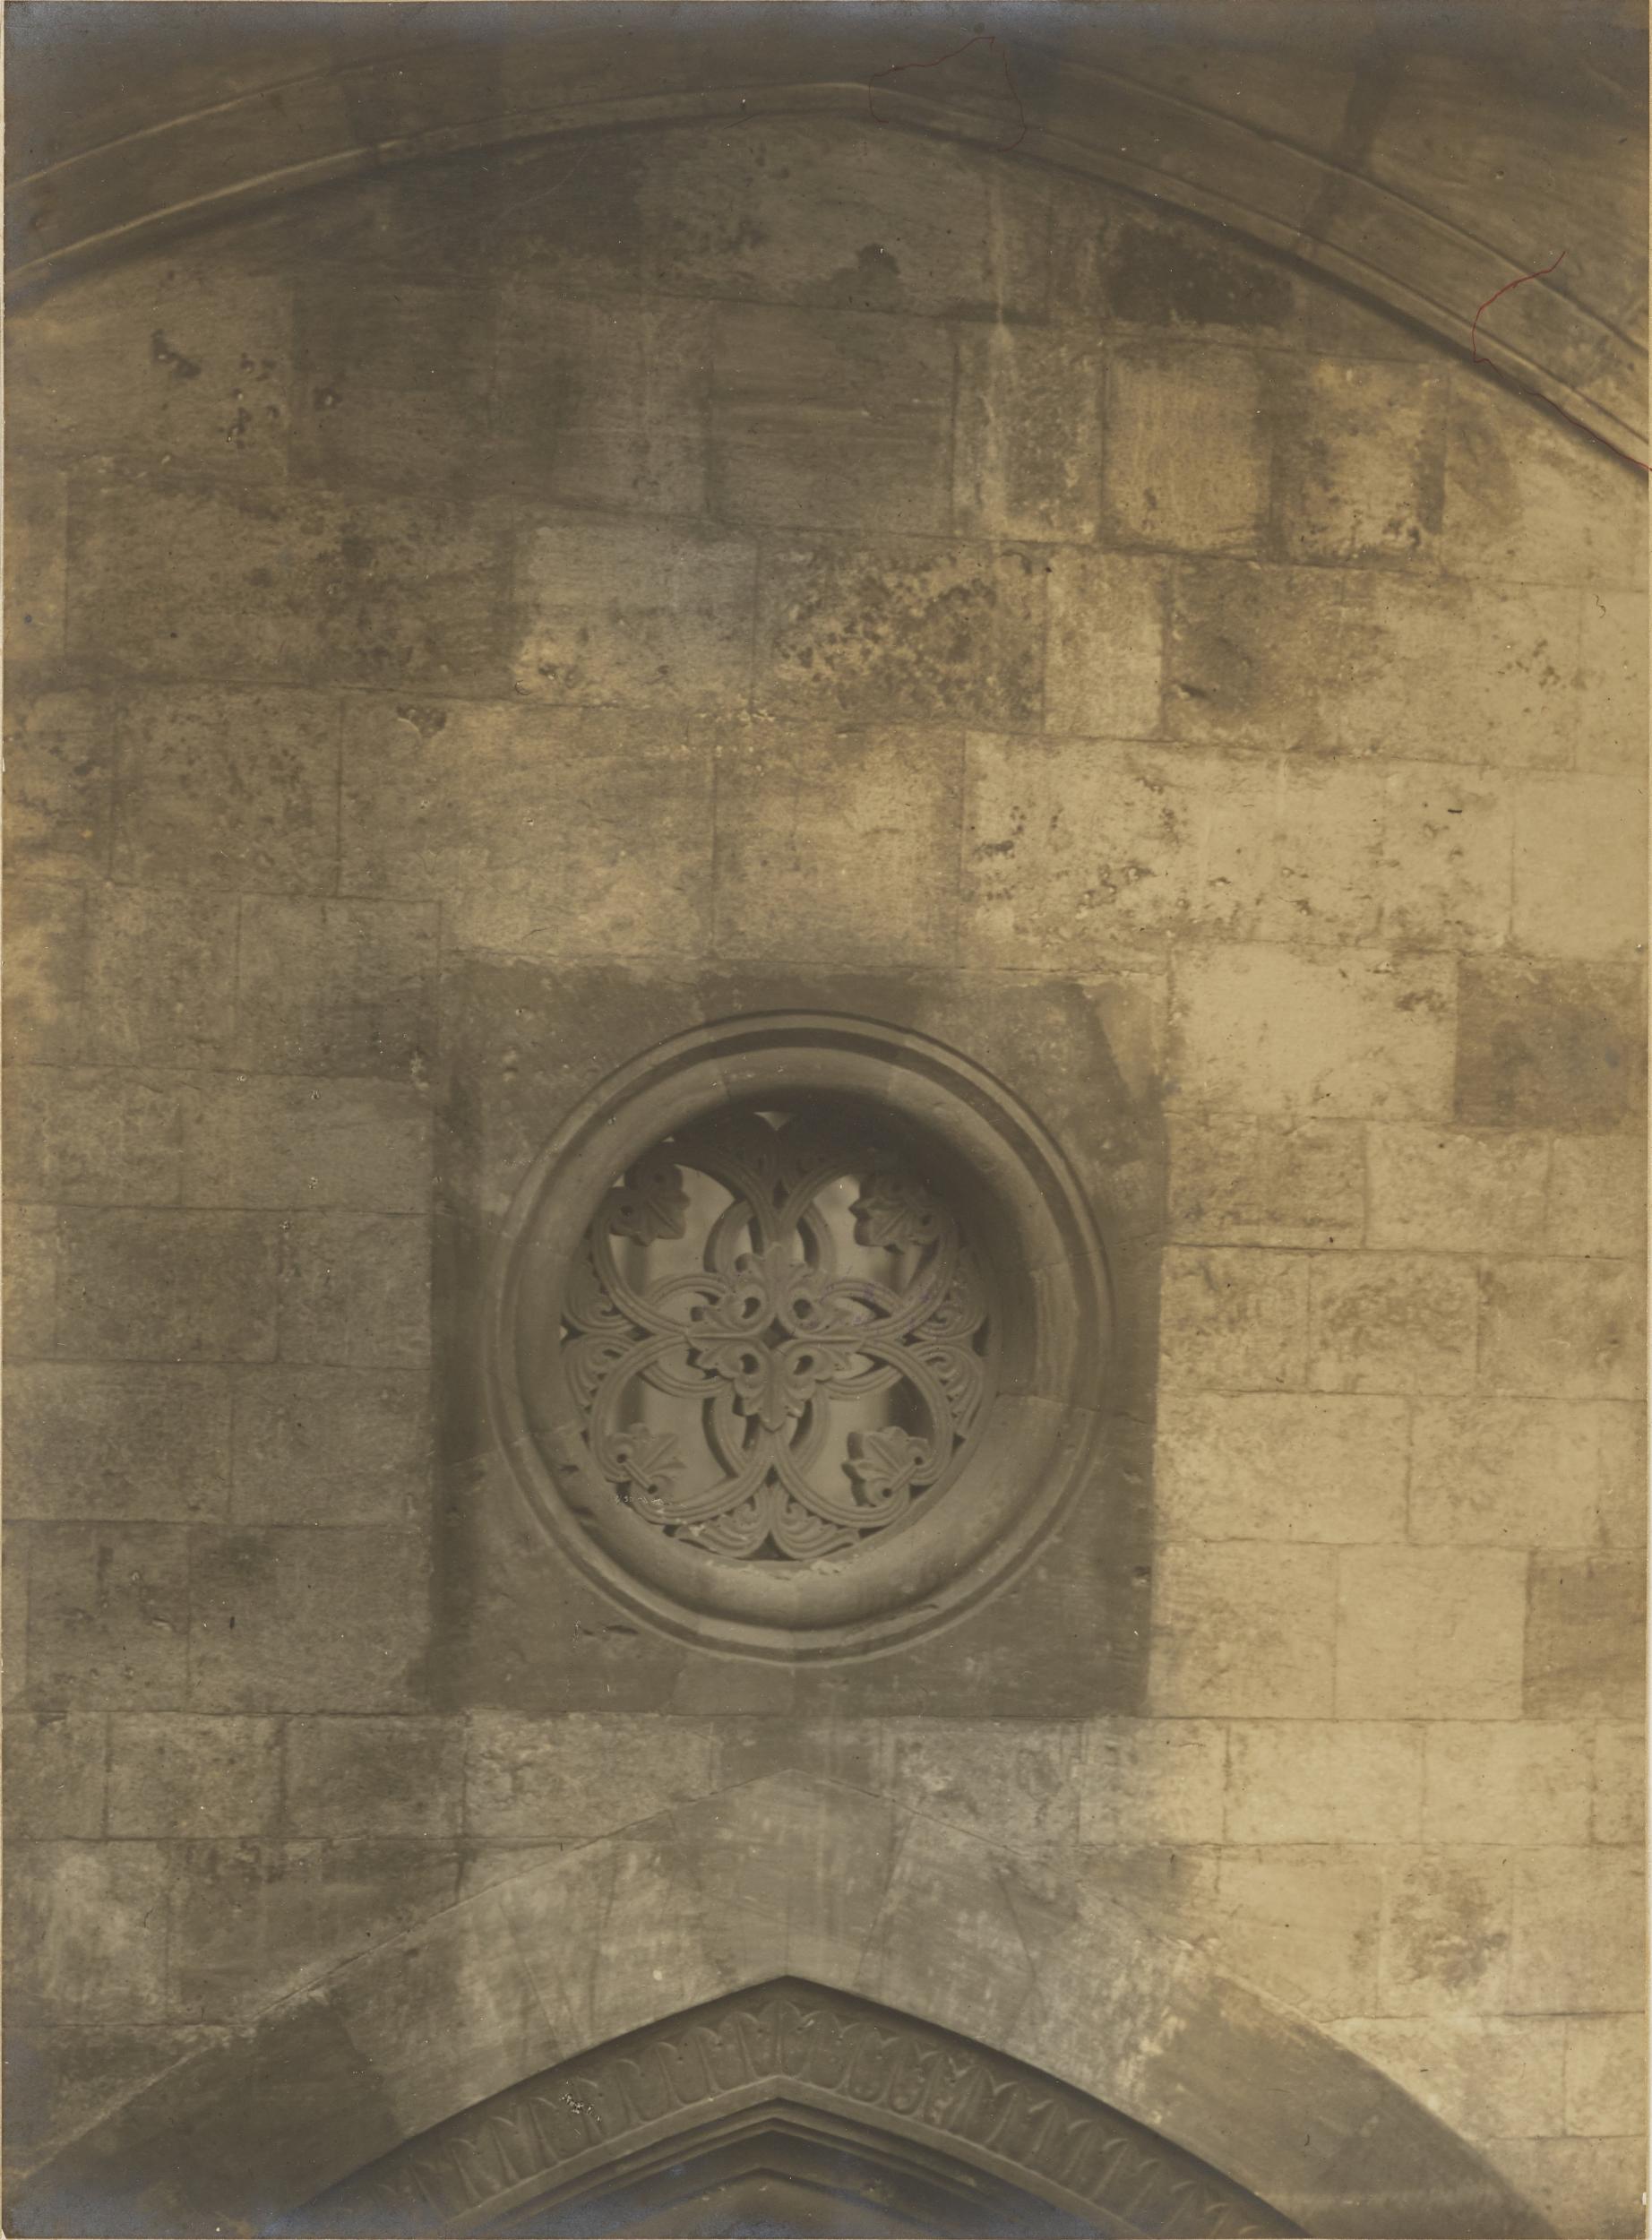 Fotografo non identificato, Conversano - Cattedrale, rosone, reintegrato dal restauro del 1914, 1901-1925, gelatina ai sali d'argento/carta, MPI155322